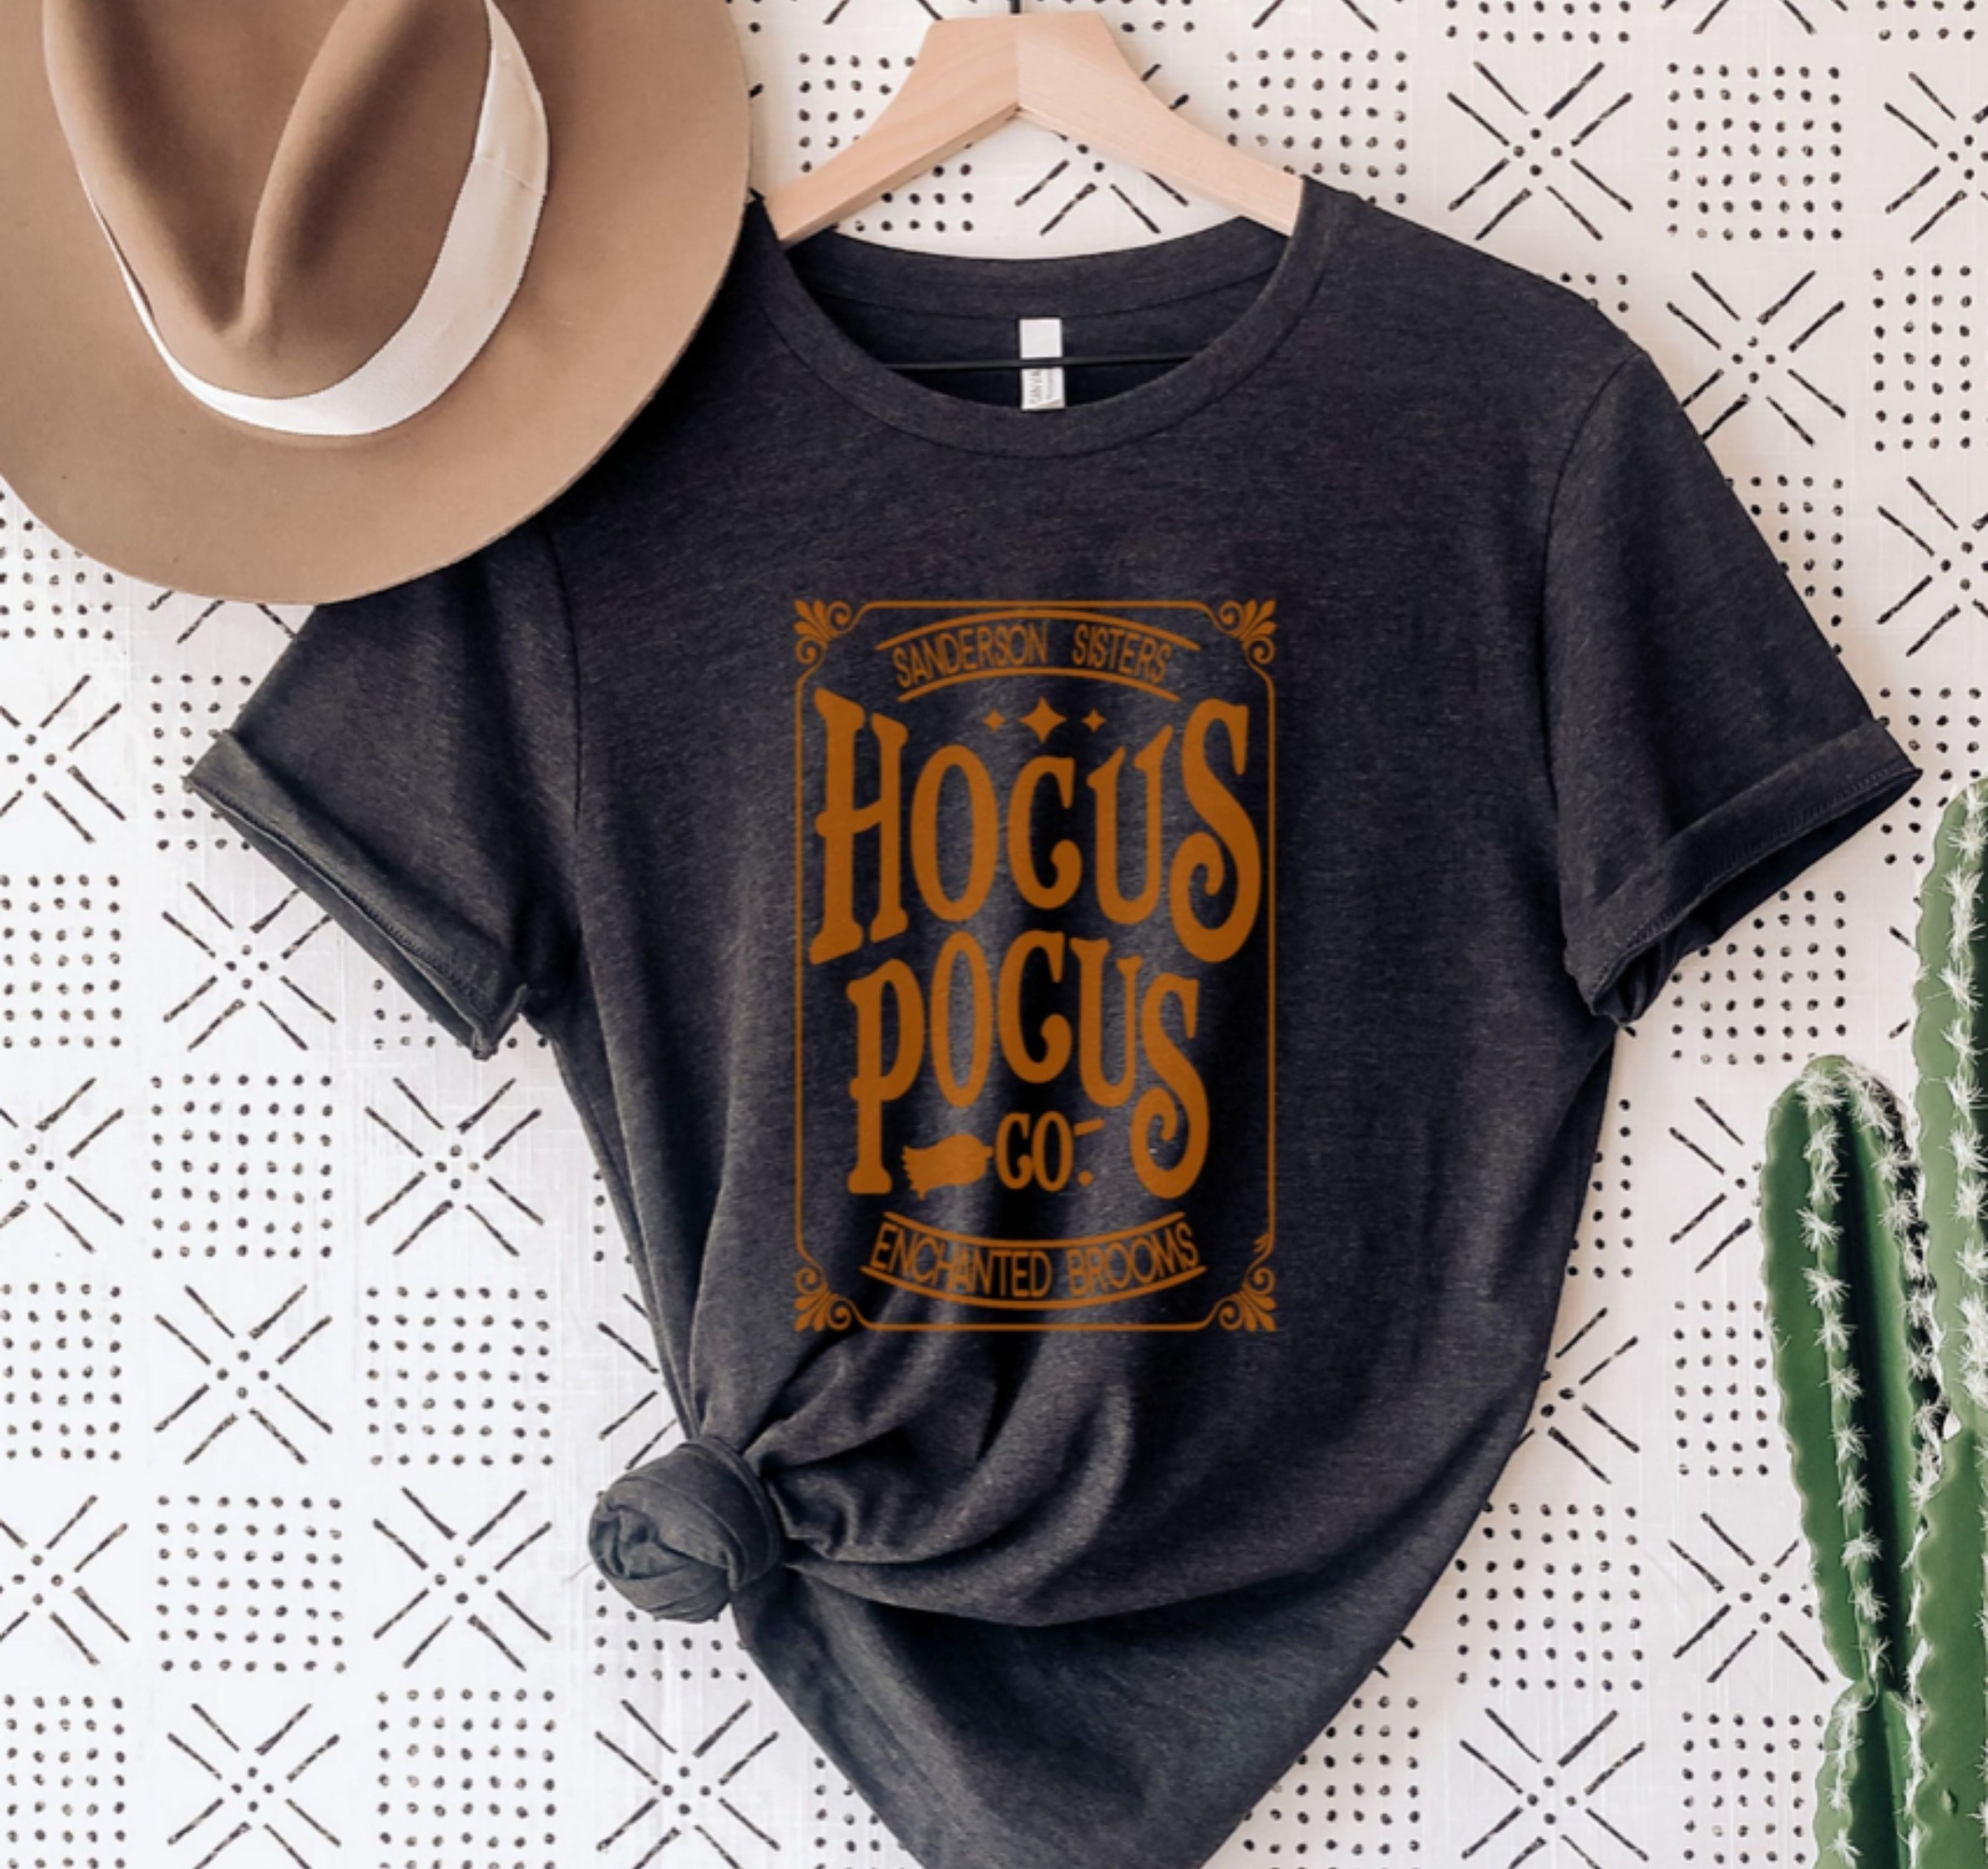 Hocus Pocus Orange Metallic Print Shirt